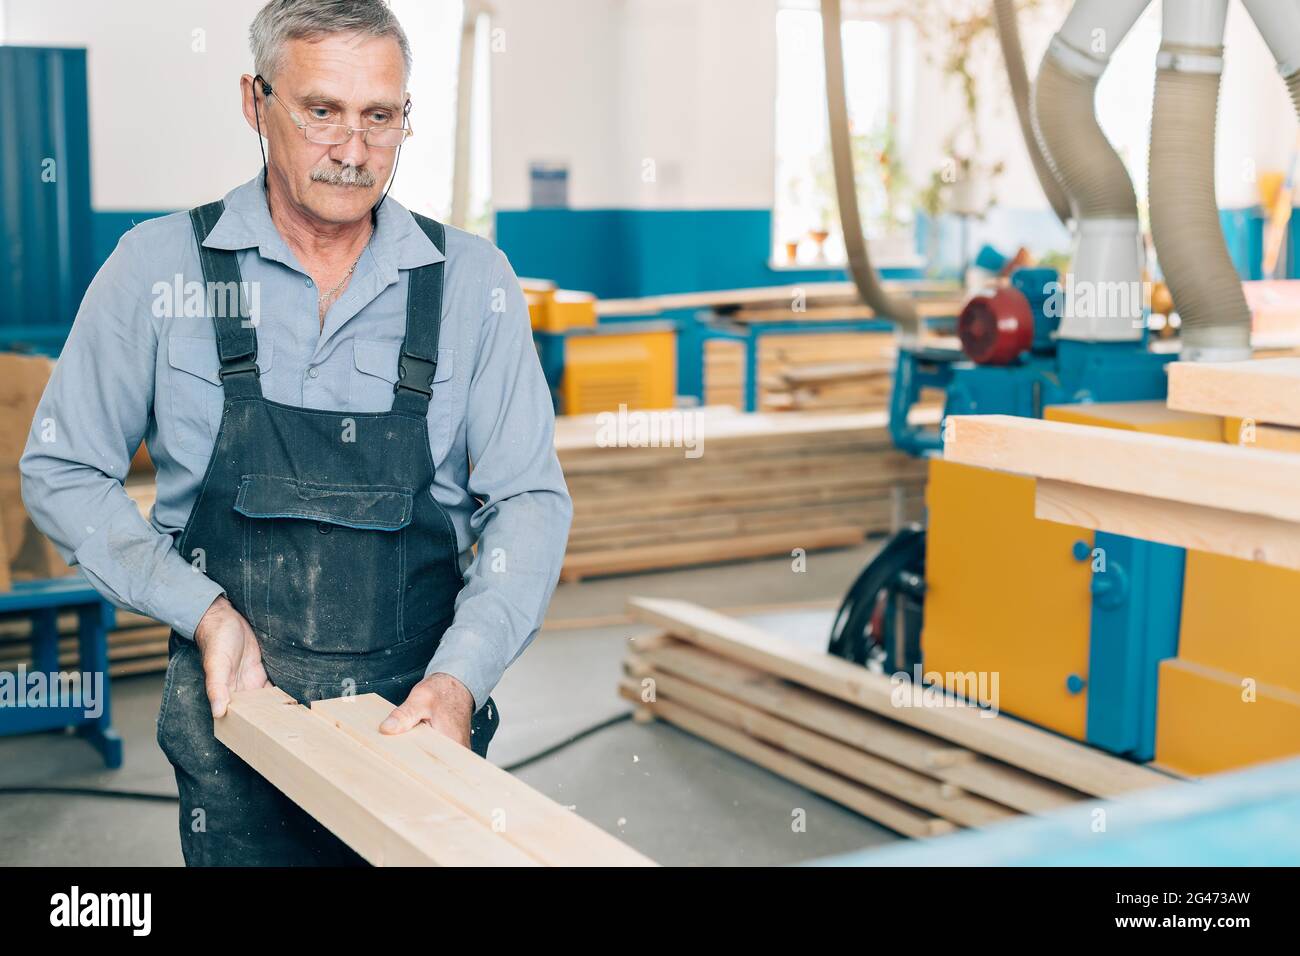 Ritratto di un falegname o falegname anziano che lavora con tavole di legno in un laboratorio di falegname. Foto Stock